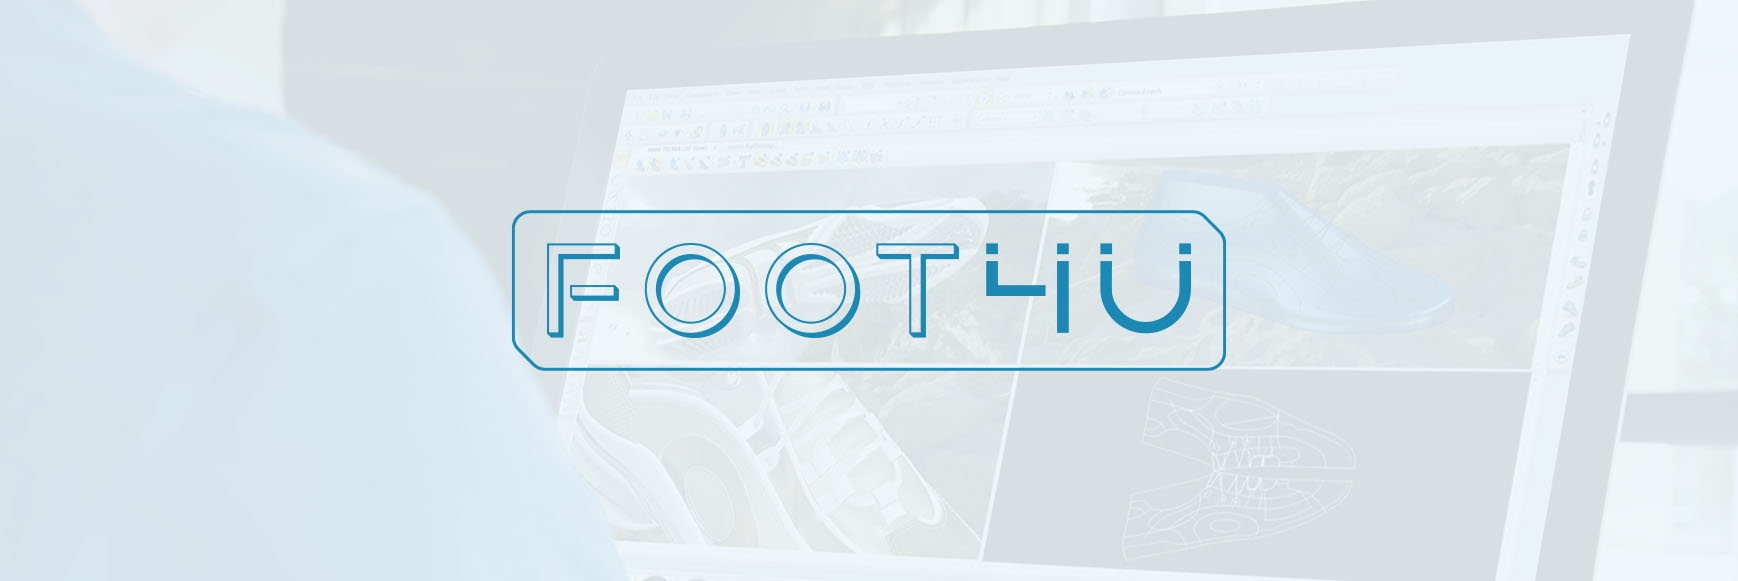 FOOT4U - Design, Modelação, Produção e Marketing para Calçado